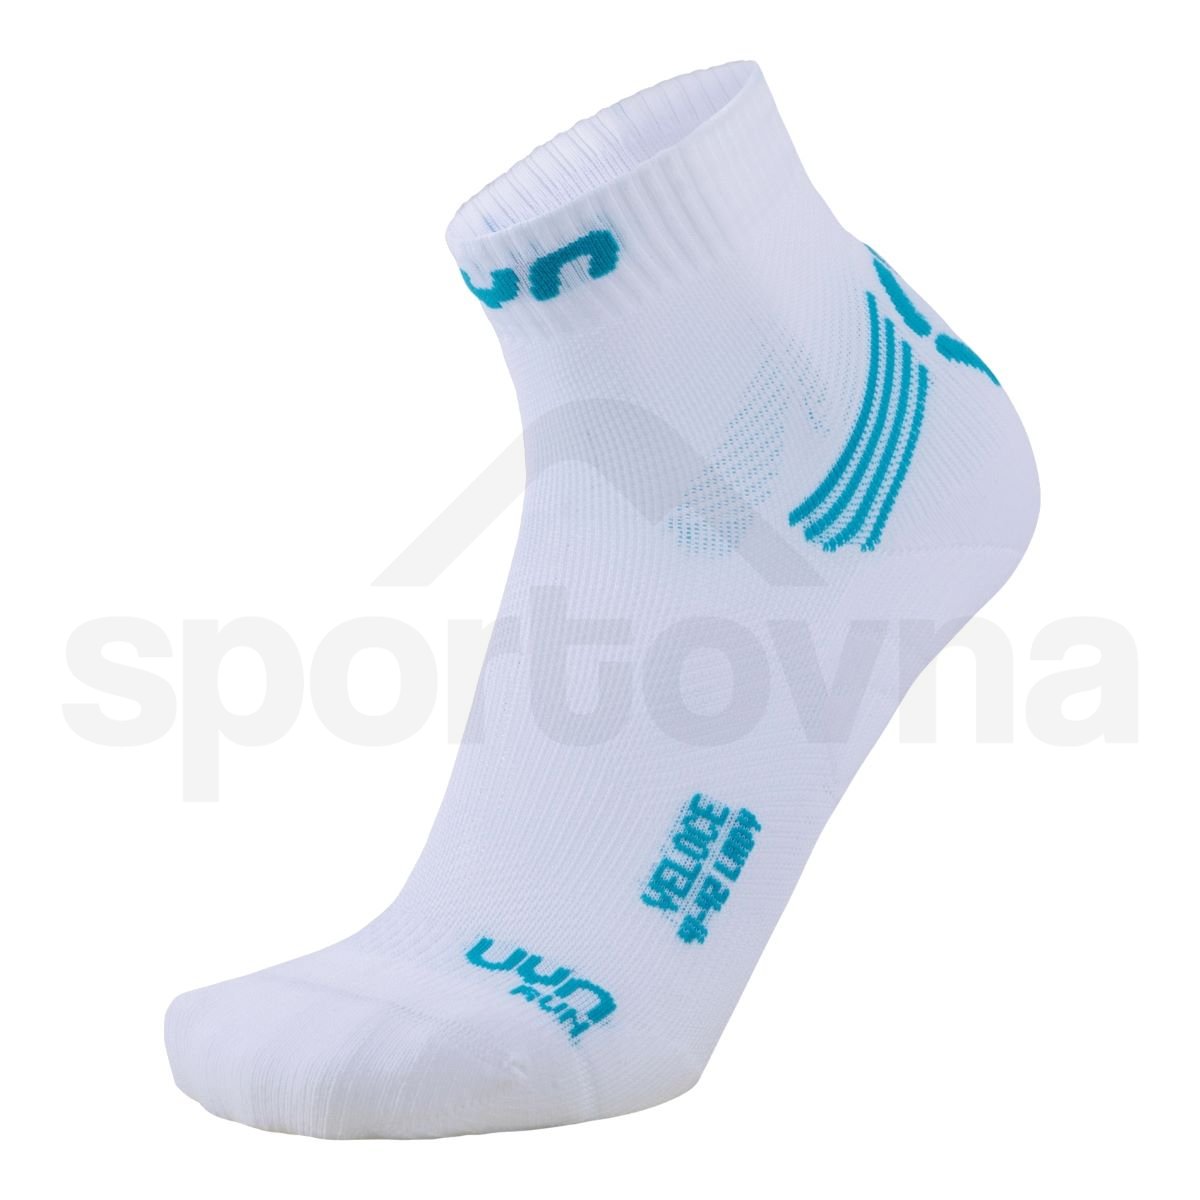 uyn-run-veloce-socks-women-white-turquoise-2-1306763-1483799